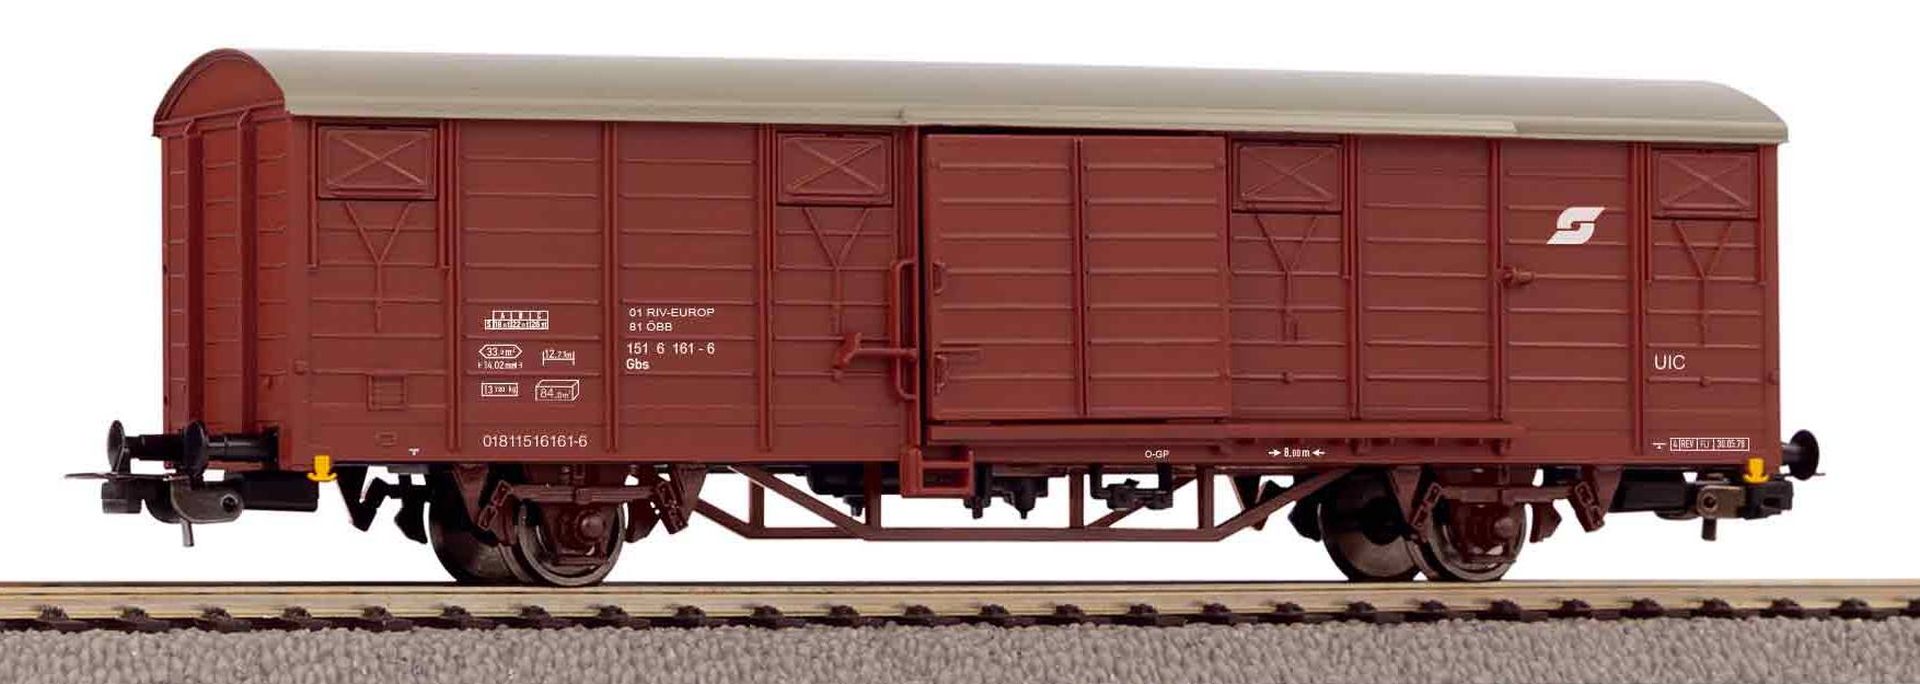 Piko 24519 - Gedeckter Güterwagen Gbs, ÖBB, Ep.IV